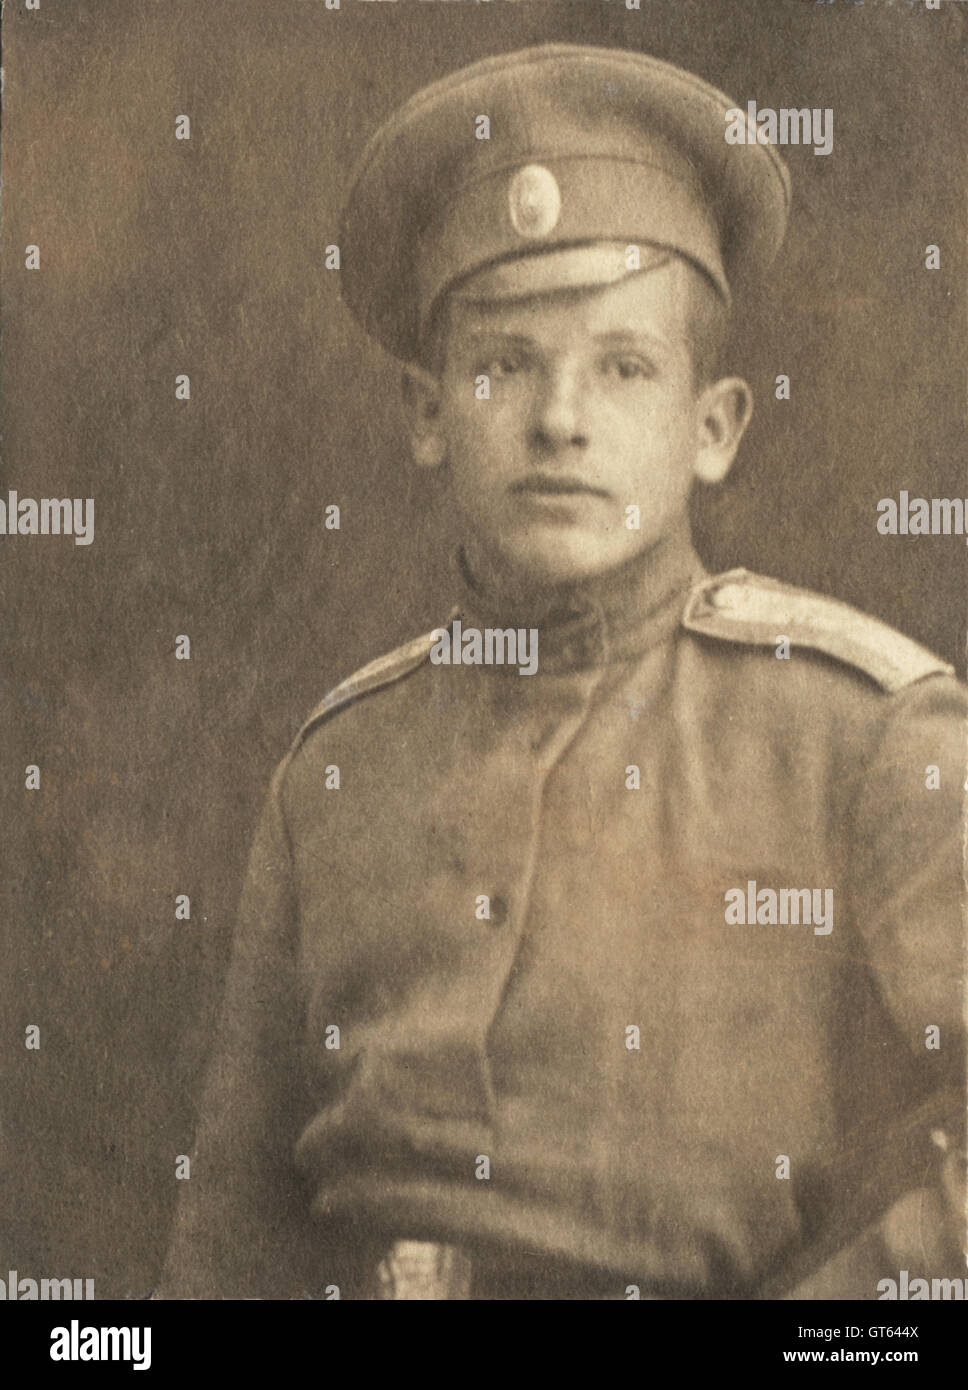 Vintage Porträt des jungen Mannes in der militärischen Uniform zu Beginn des zwanzigsten Jahrhunderts, Russland Stockfoto